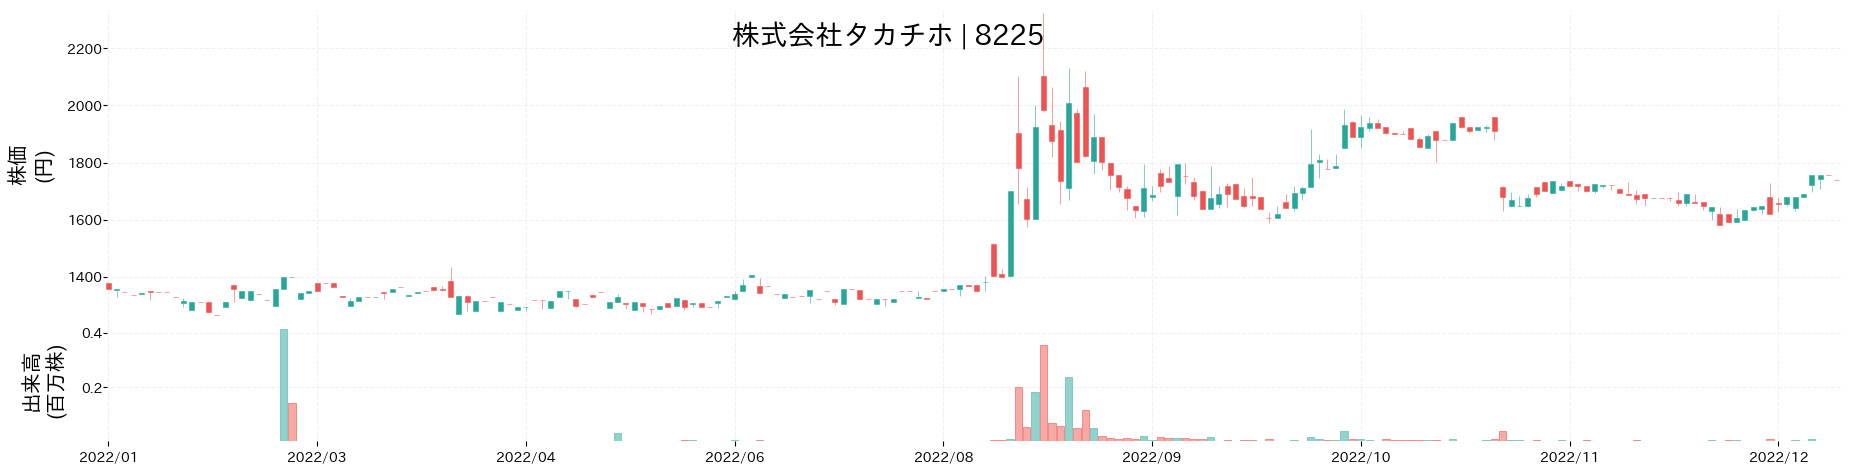 タカチホの株価推移(2022)